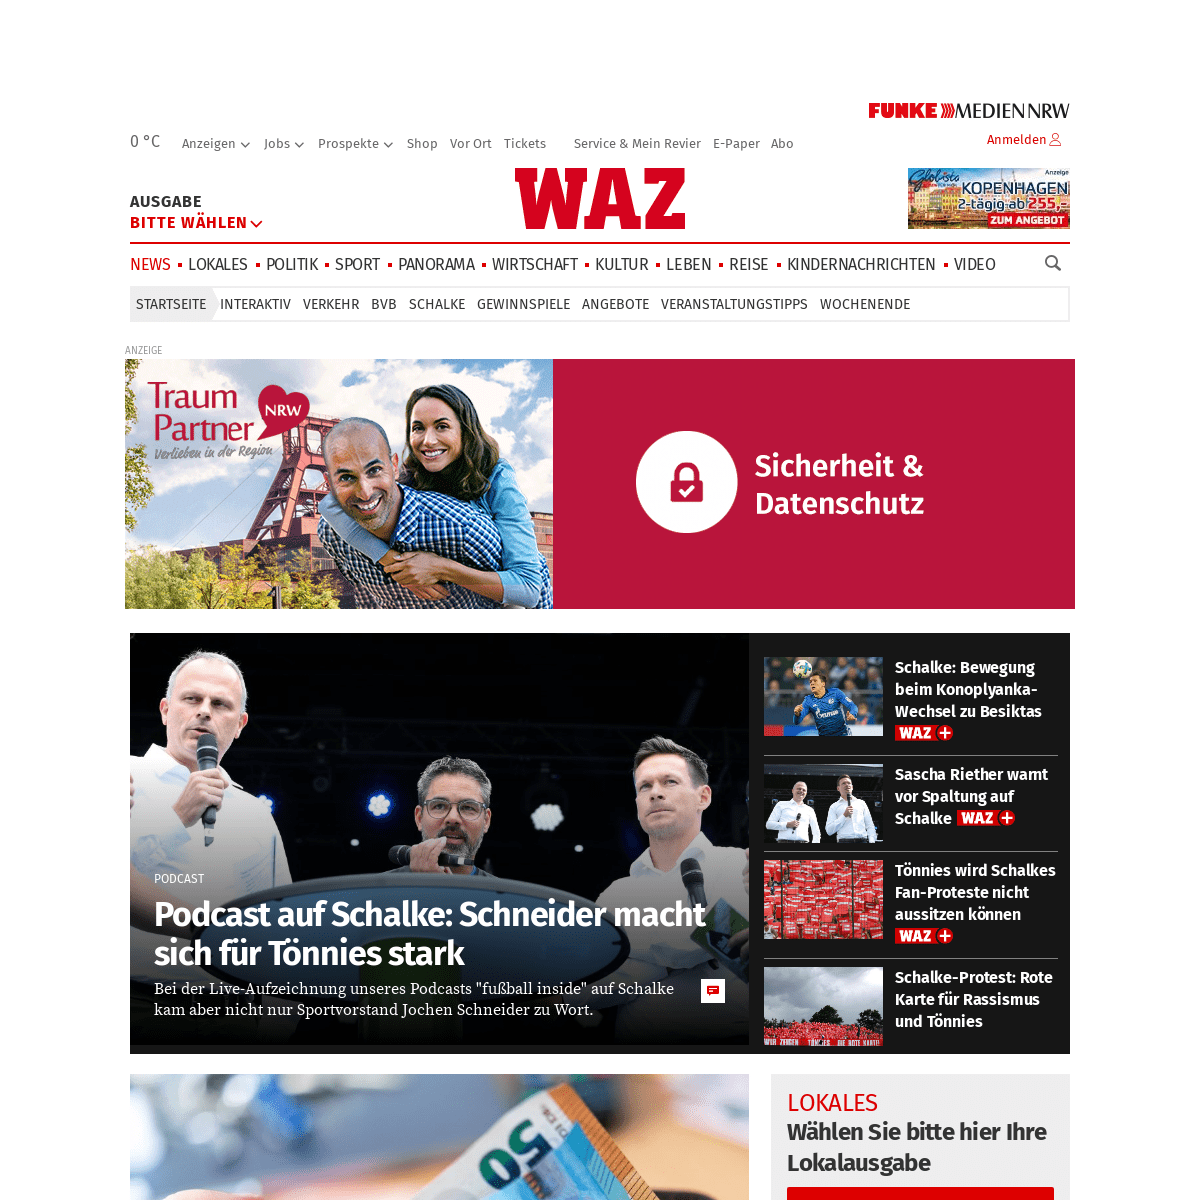 Deutschlands größte Regionalzeitung waz.de